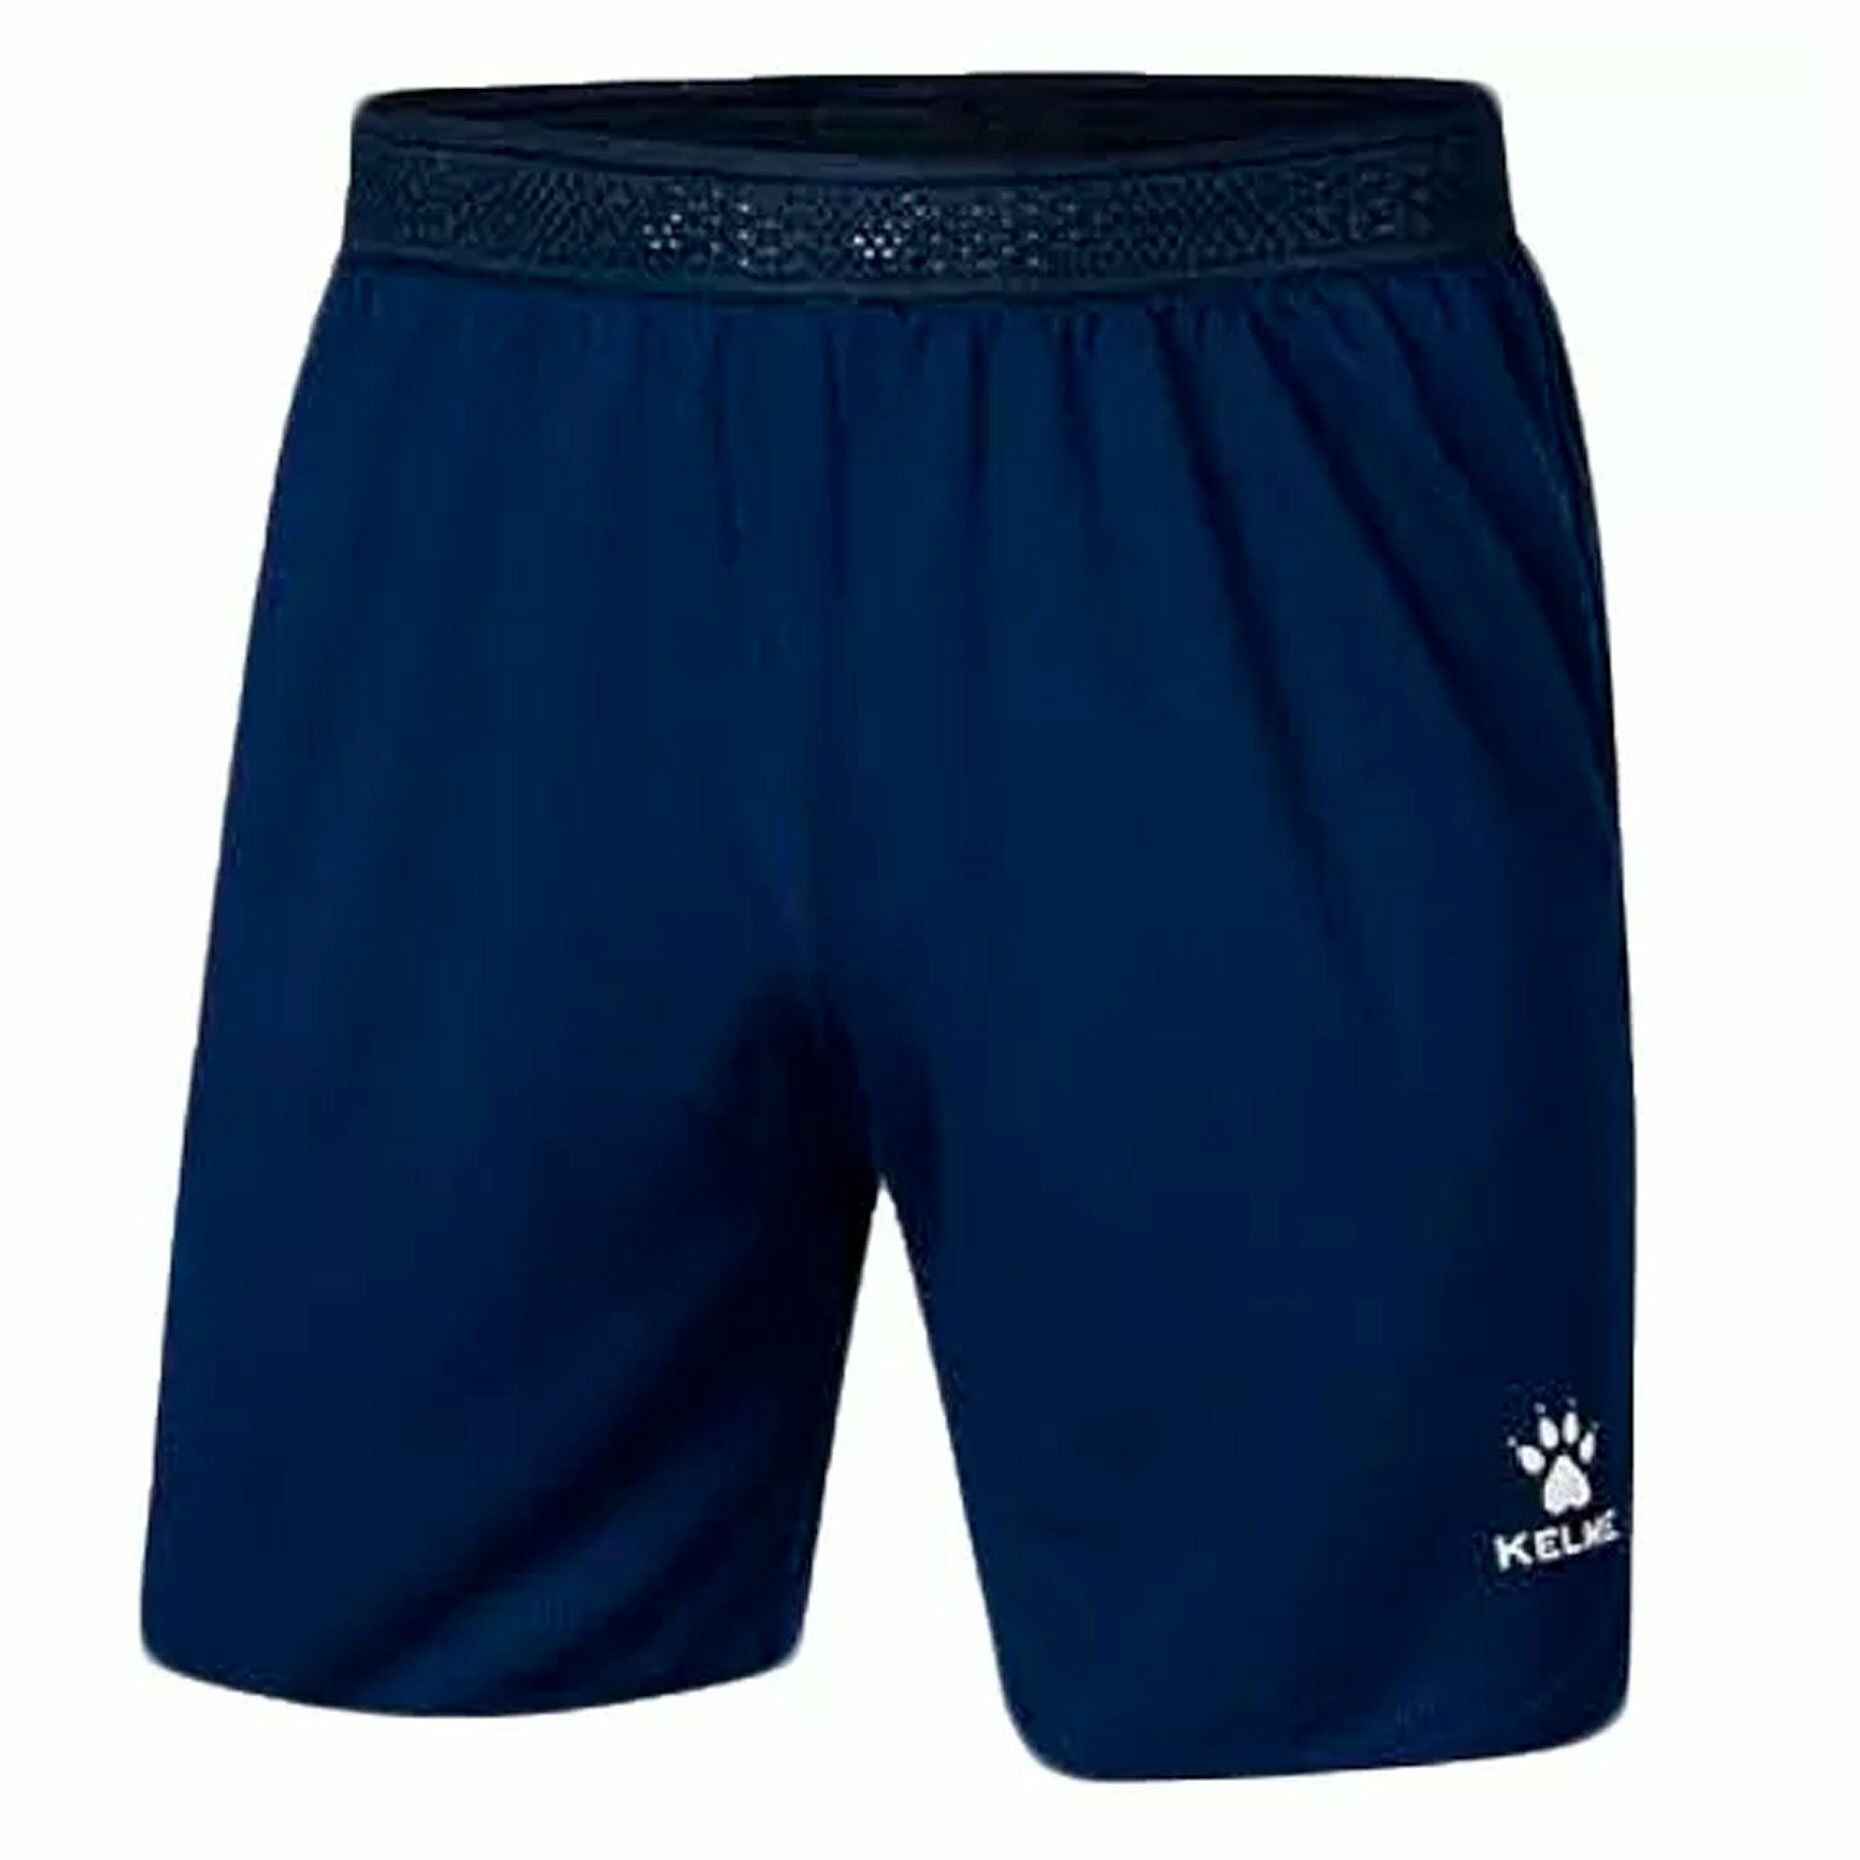 Шорты KELME Training shorts синие размер XL